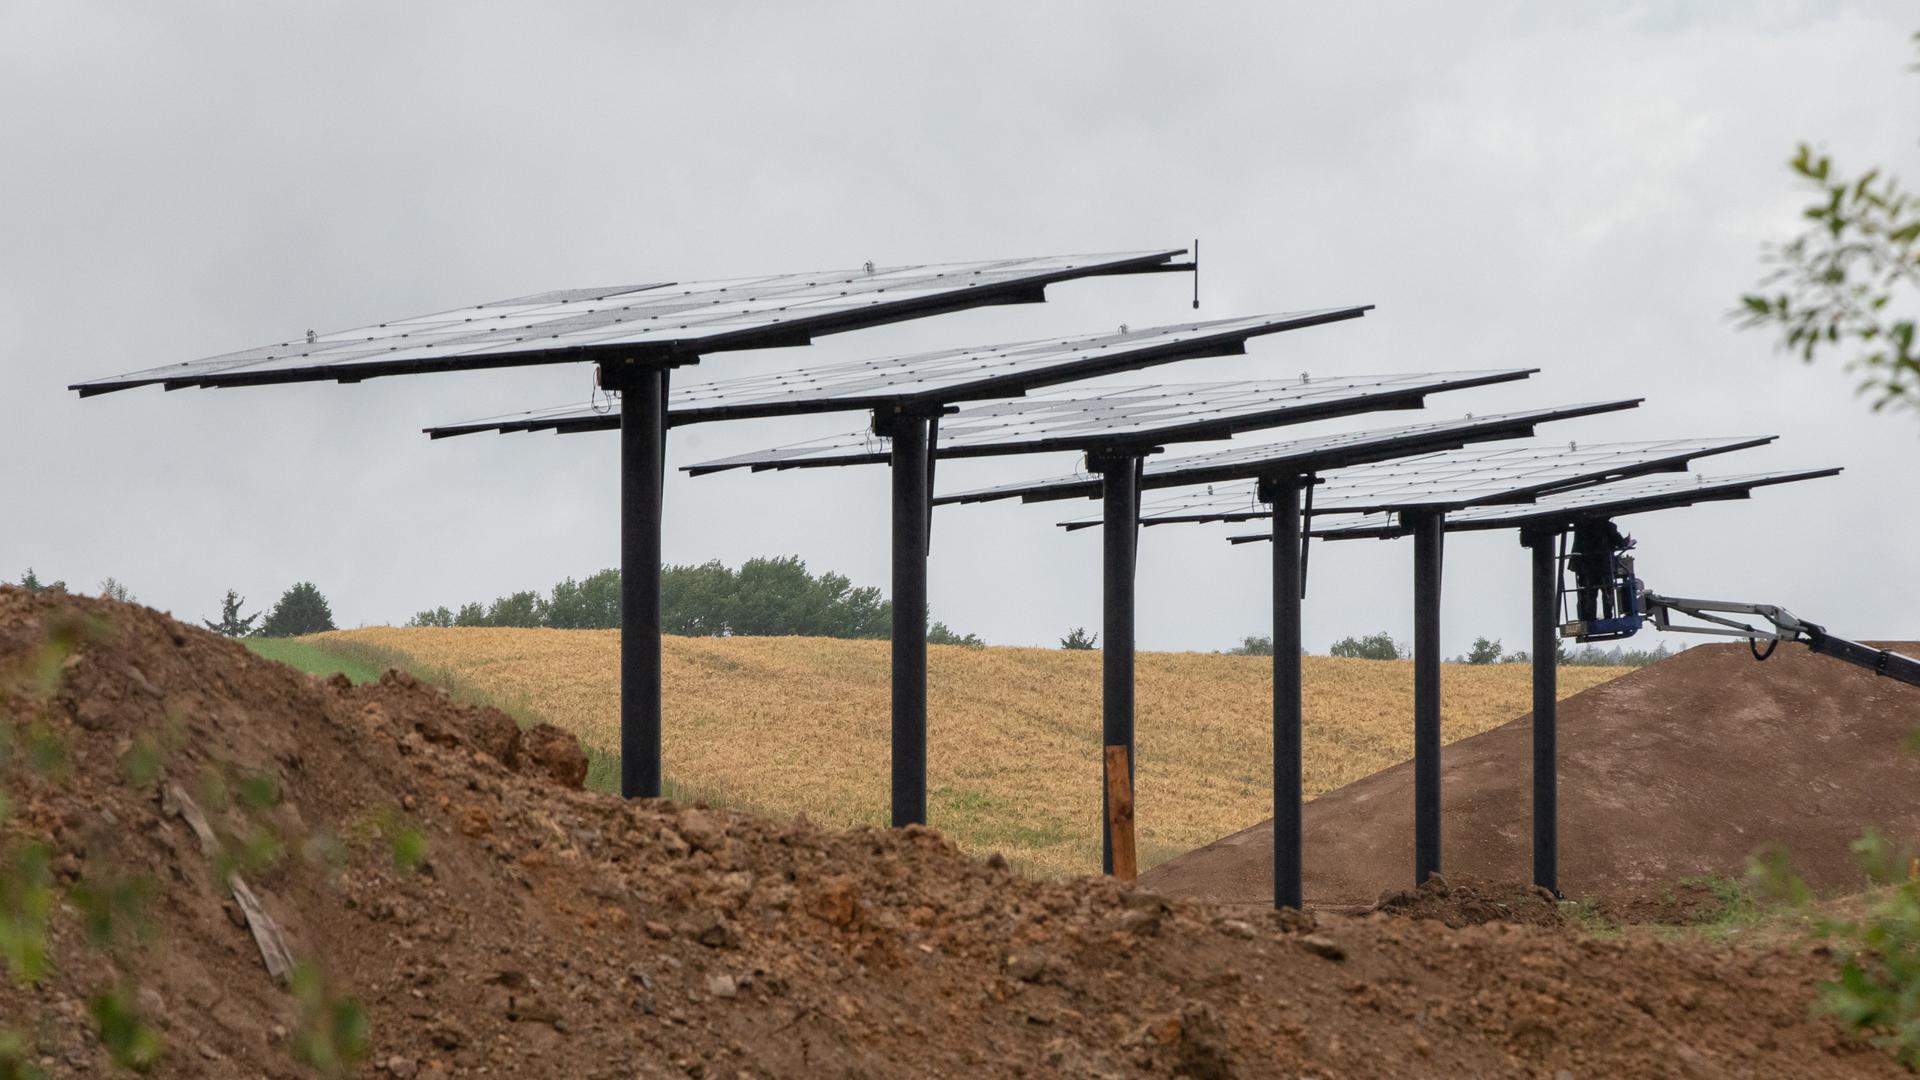 Les projets de centrales solaires se multiplient au Luxembourg, qui va aussi accueillir une usine de fabrication de panneaux.